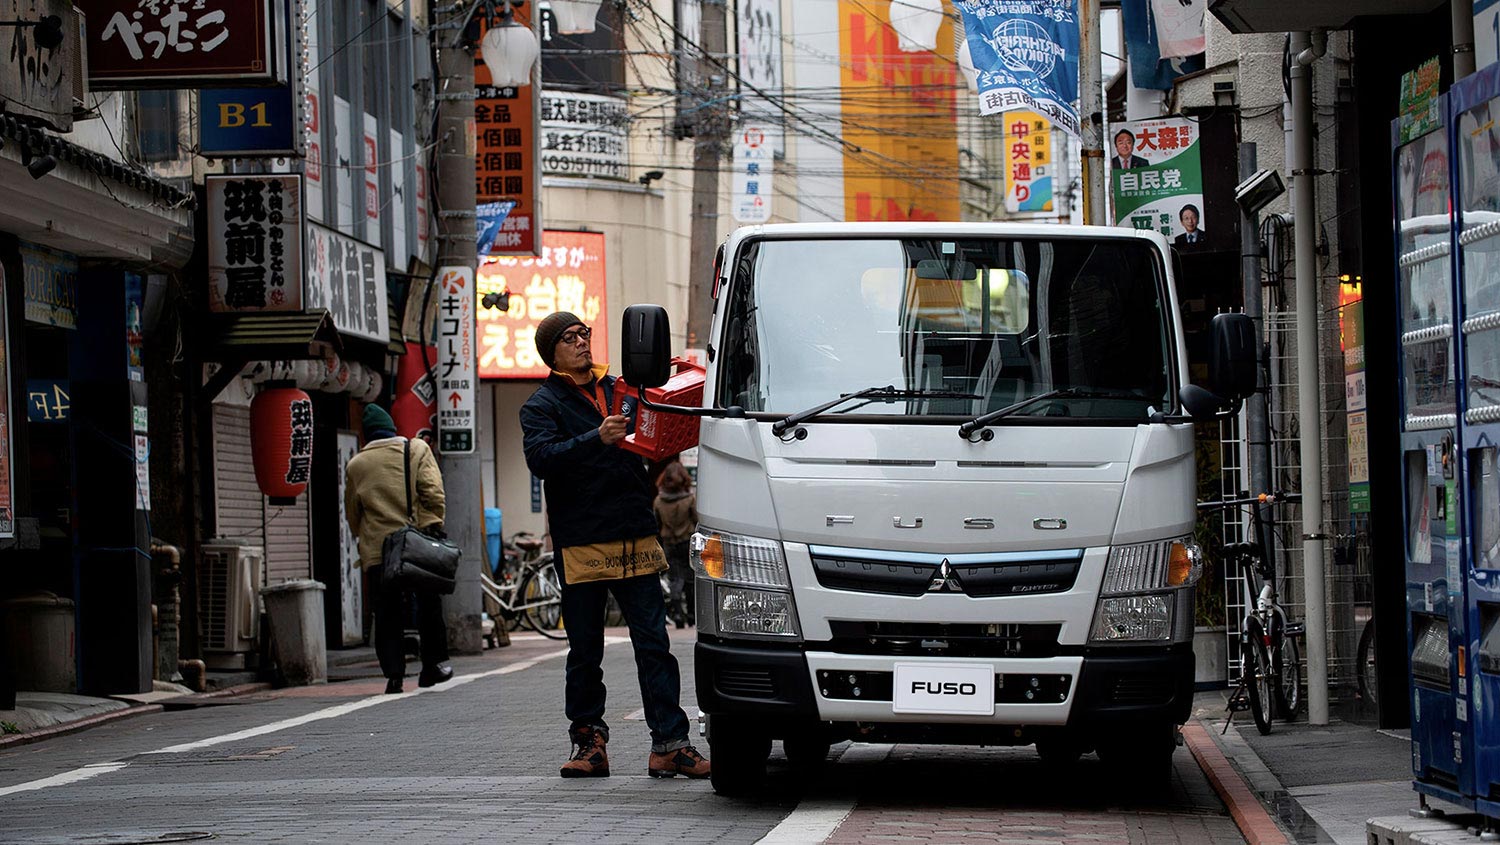 Camión Fuso 413 Blanco, mostrando la parte frontal del camión estacionado en un barrio chino mientras un operador carga bandejas de bebestibles